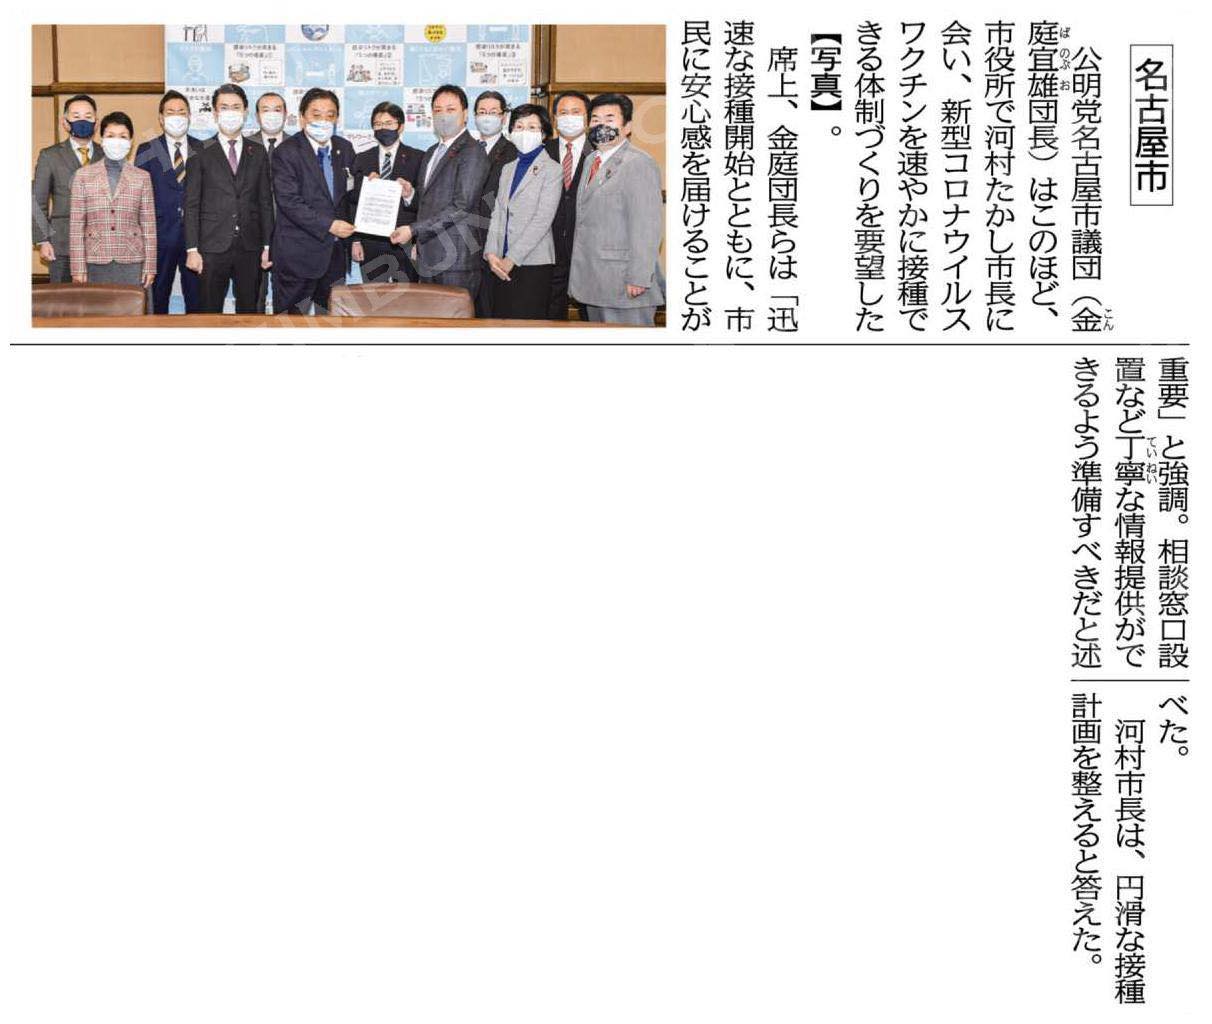 名古屋市の公明党市議団は、いち早く、ワクチン接種体制の整備について要望を実施